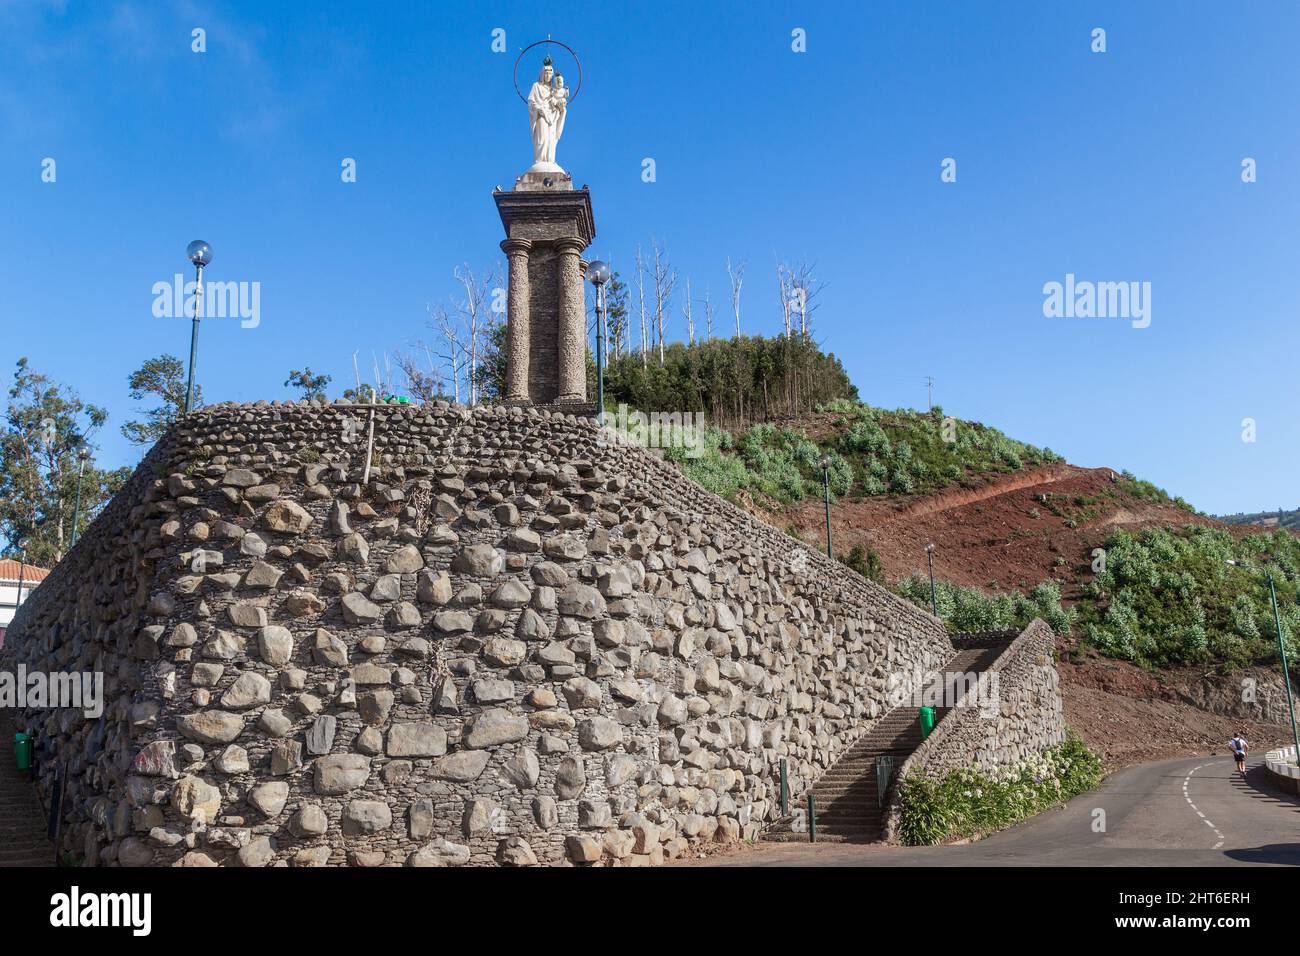 FUNCHAL, PORTUGAL - 22. AUGUST 2021: Dies ist die Statue der Muttergottes des Friedens, die zu Ehren des Endes des Ersten Weltkriegs im Distr Terreiro da Luta errichtet wurde Stockfoto